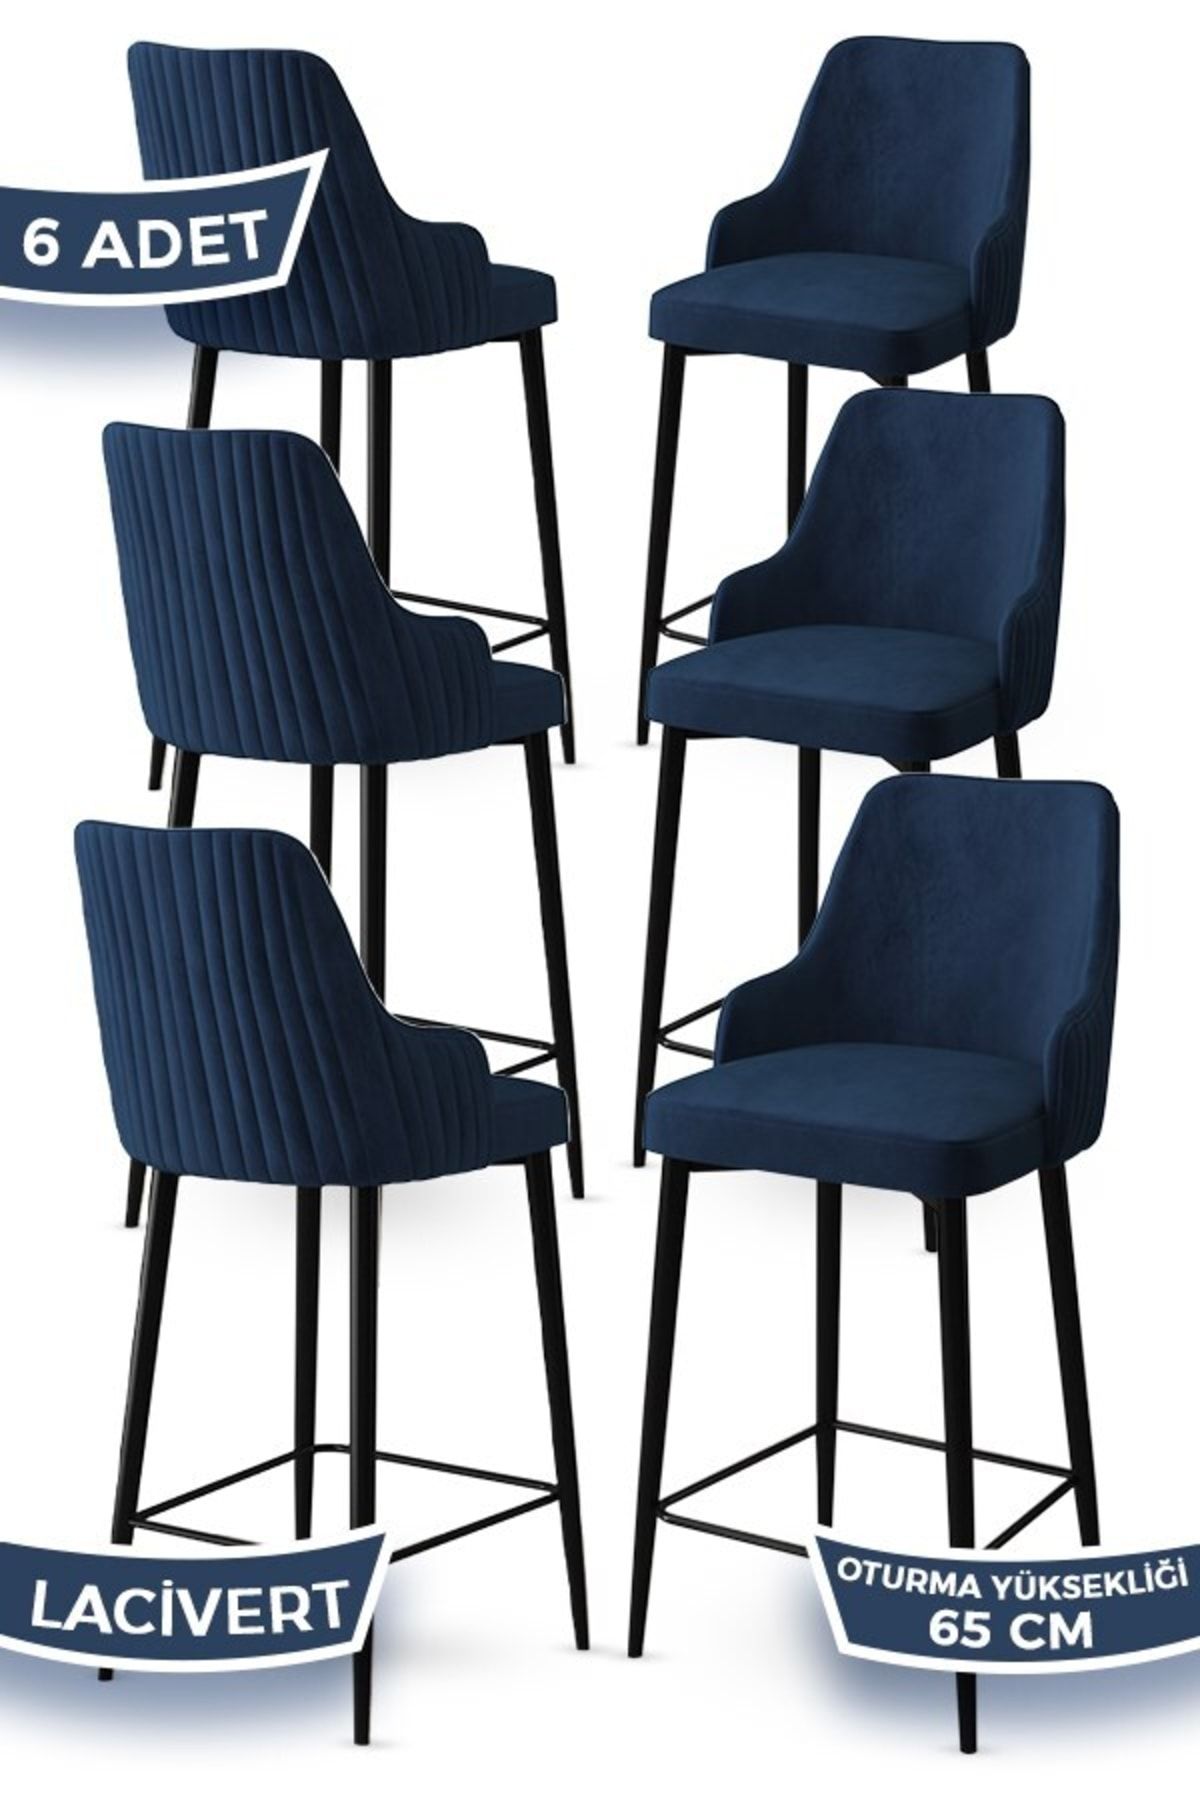 Canisa Concept Tera Serisi 6 Lacivert Sandalye 65 Cm Ada Mutfak Bar Sandalyesi Babyface Kumaş Siyah Metal Ayaklı